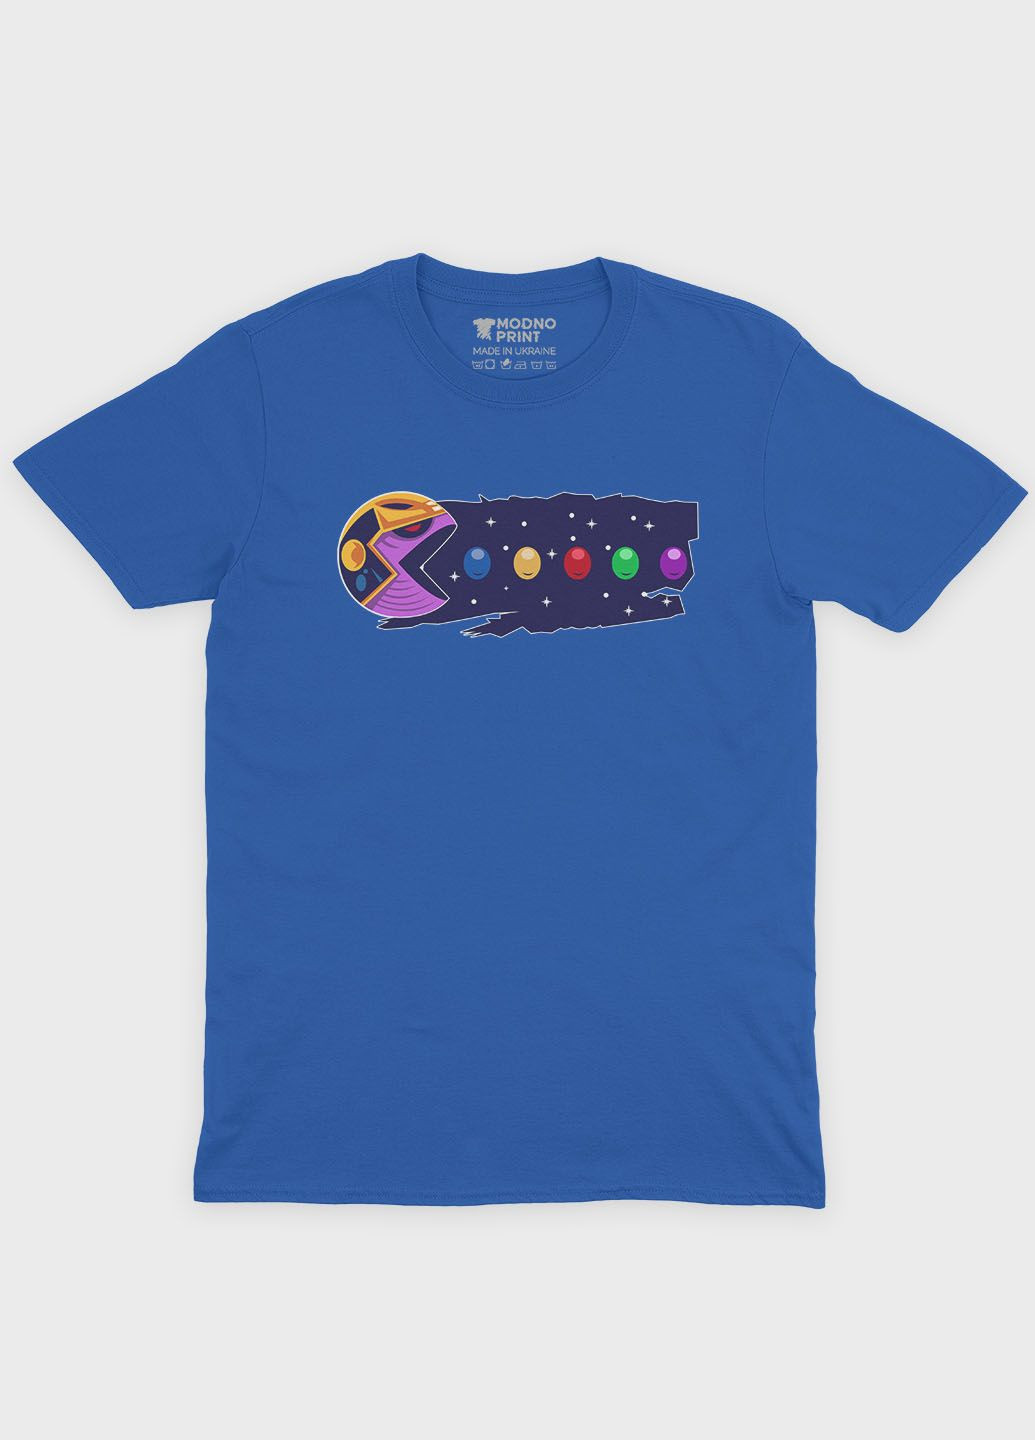 Синяя демисезонная футболка для мальчика с принтом супезлоды - танос (ts001-1-brr-006-019-015-b) Modno